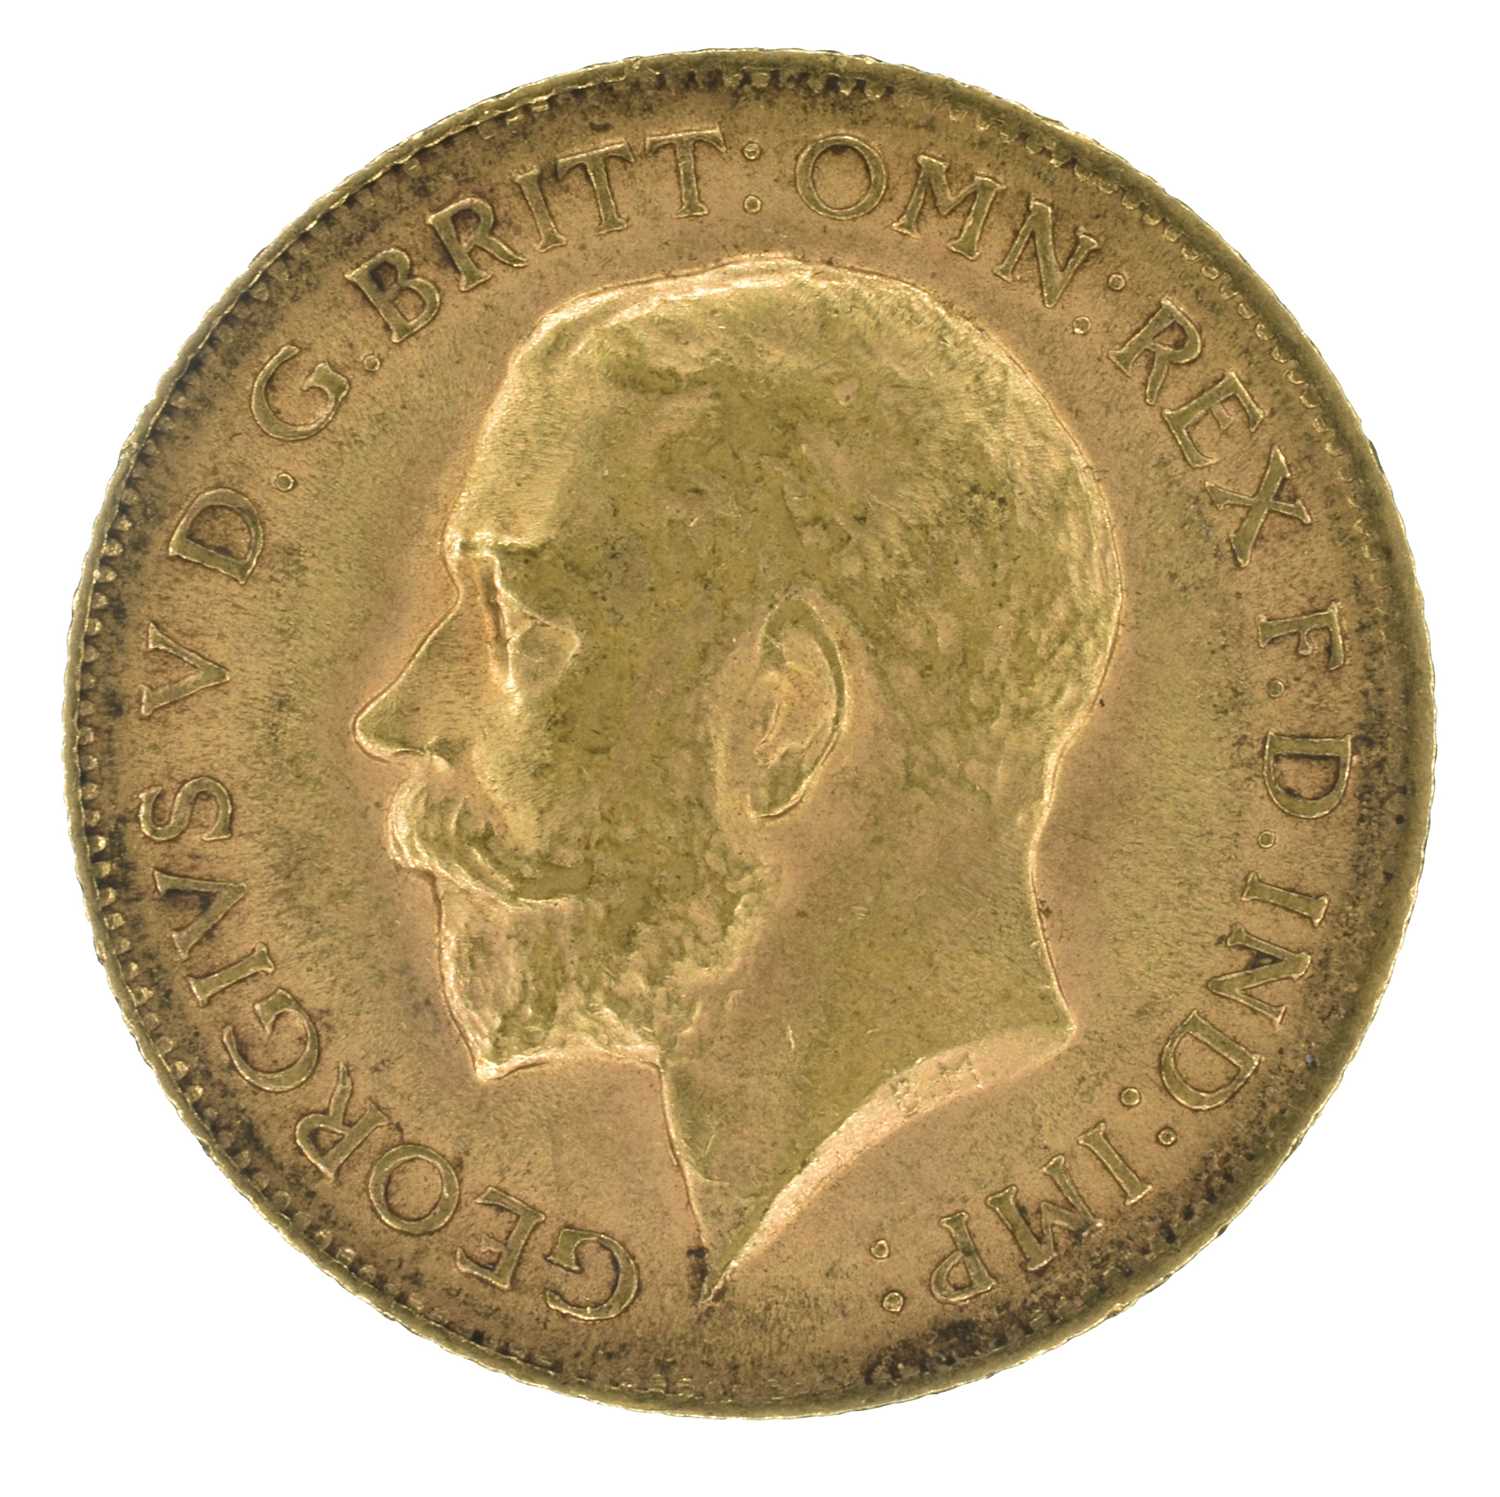 King George V, Half-Sovereign, 1914.